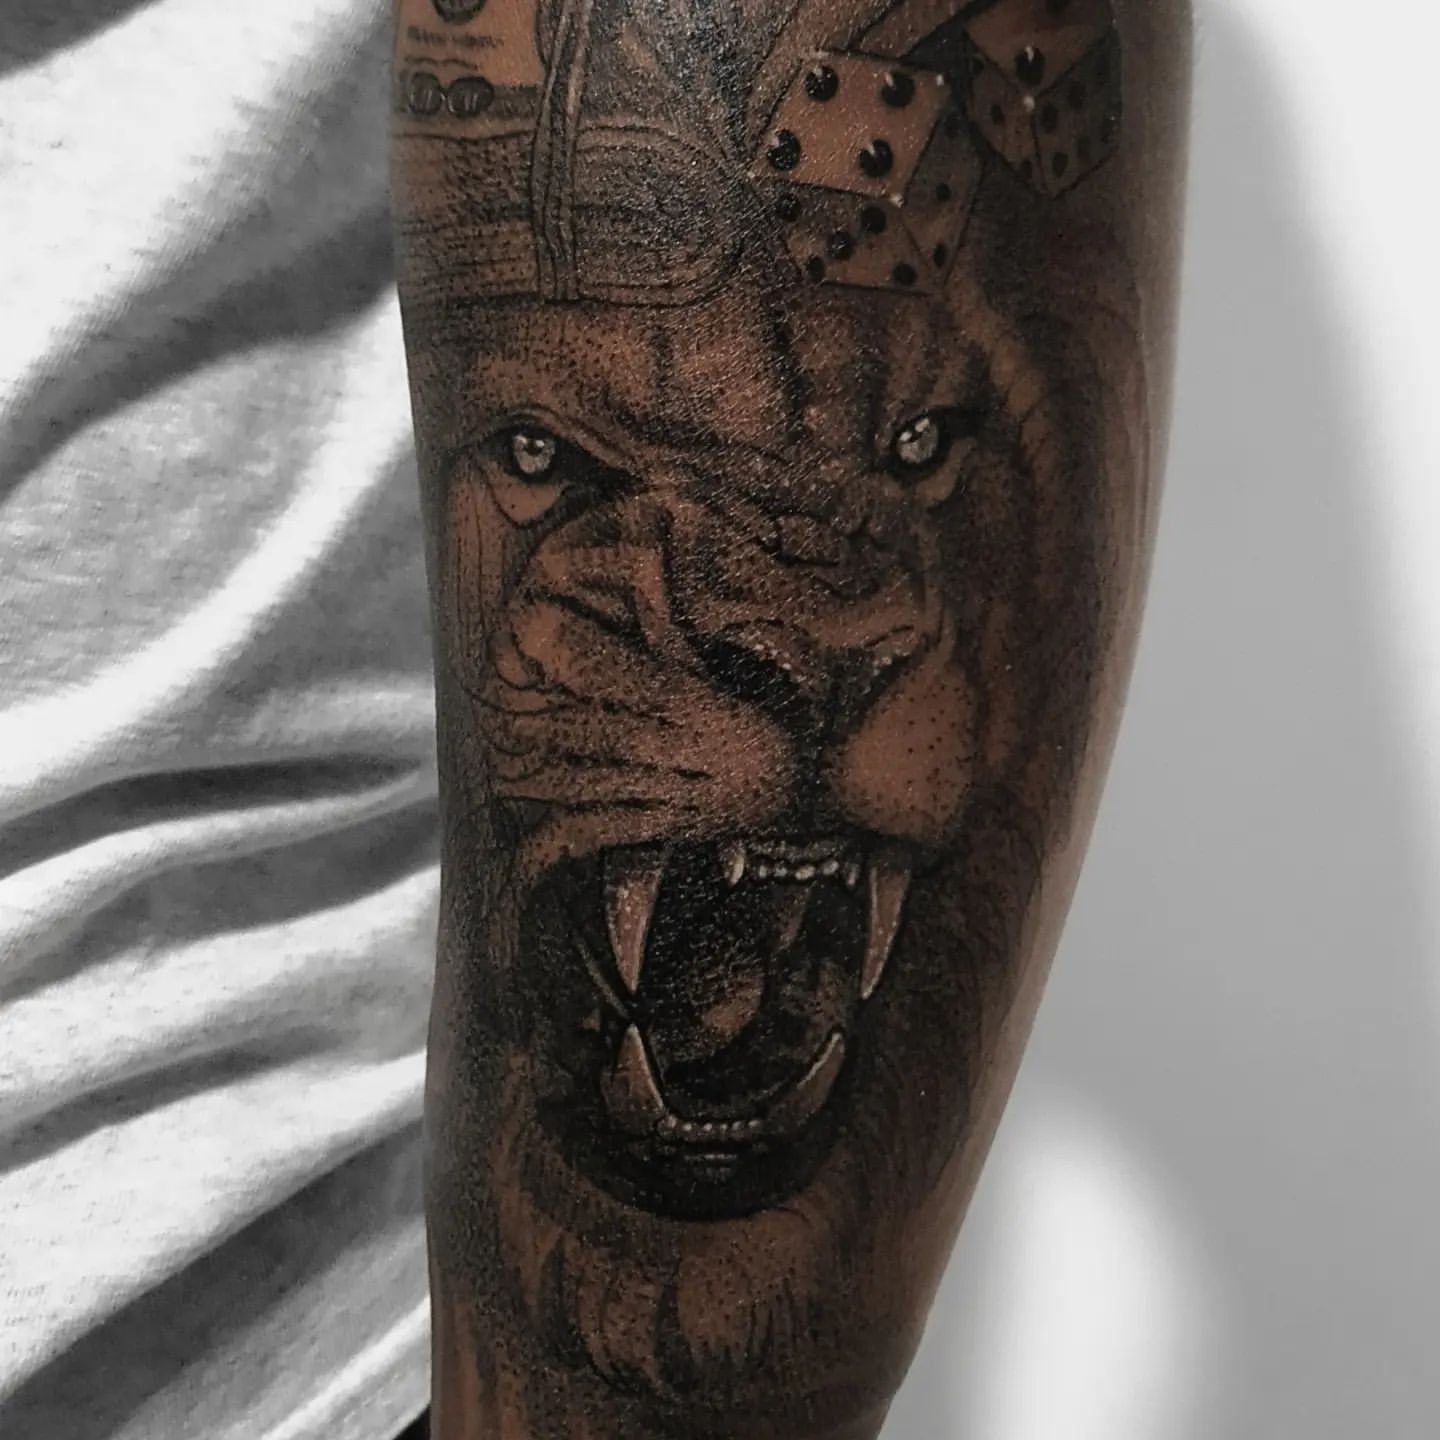 Tattoo Ideas For Men, Lion Tattoo